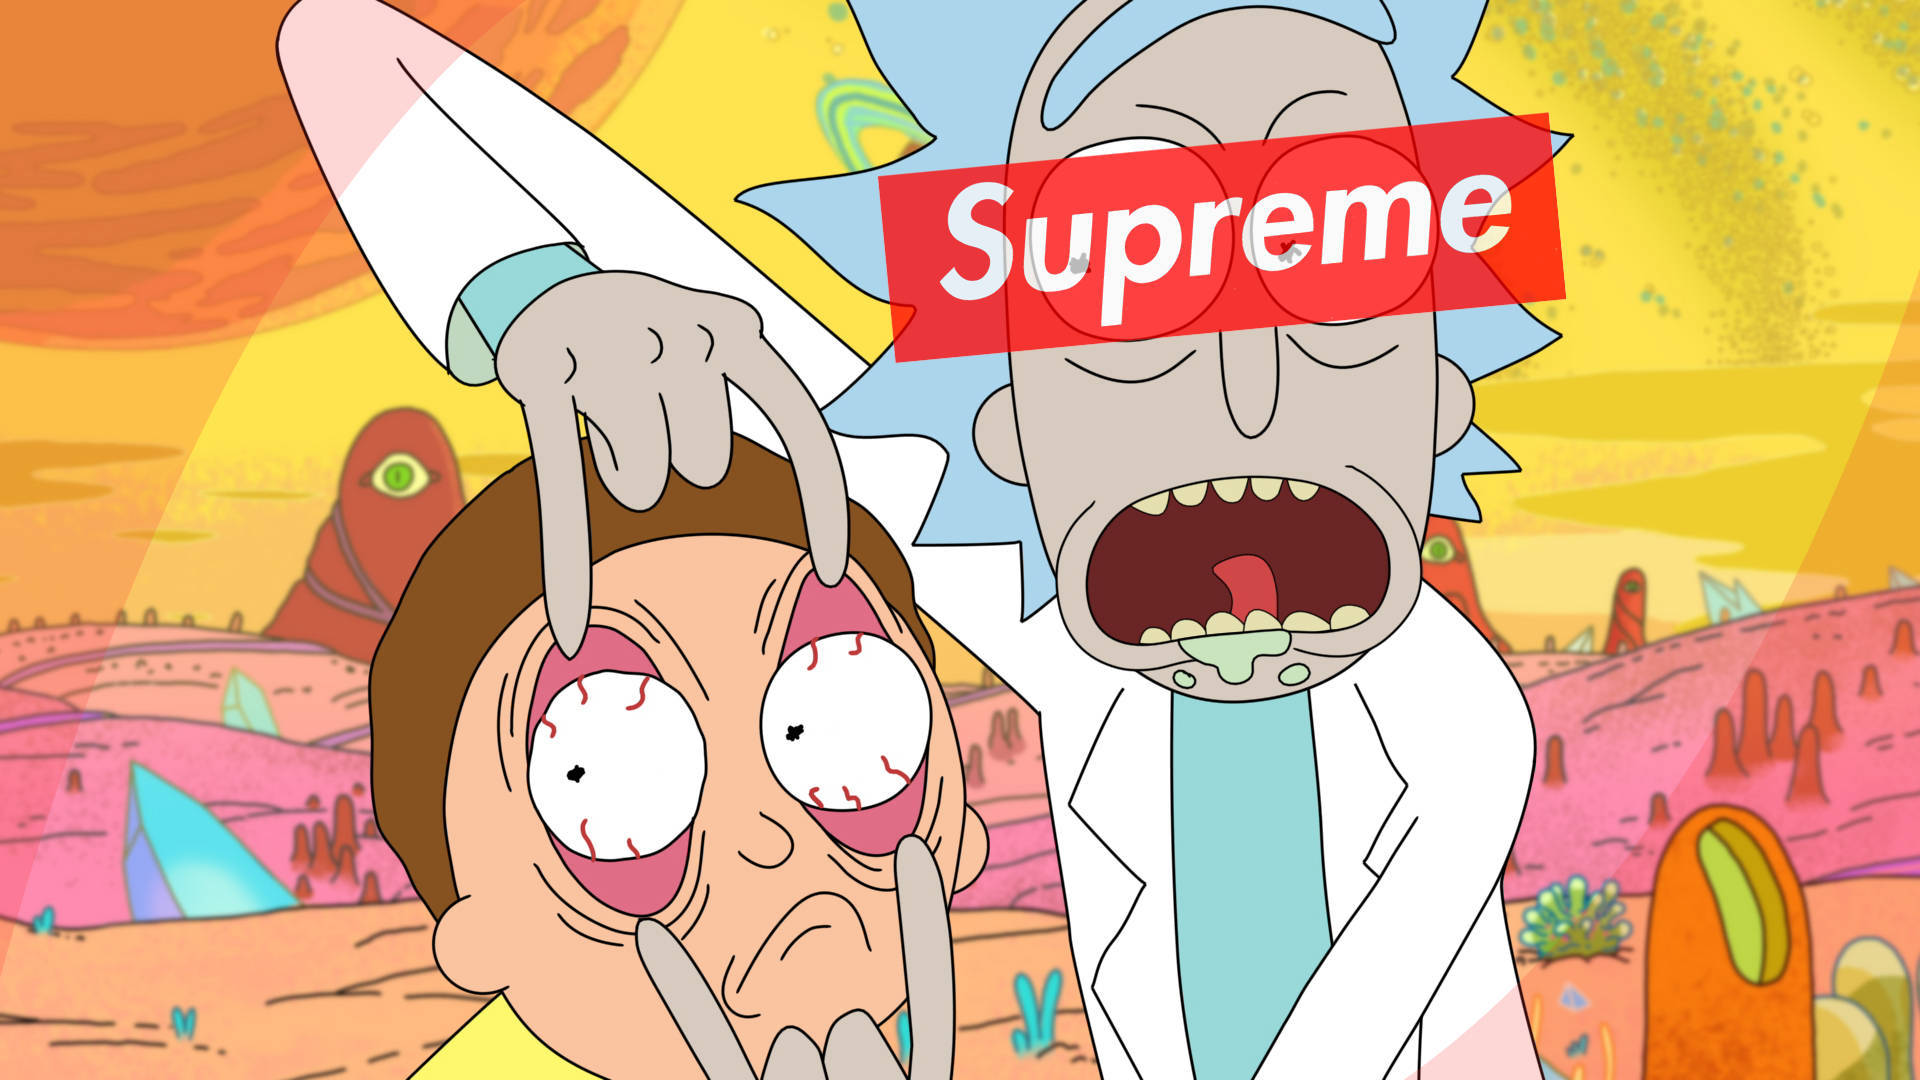 Tradução: Desenho Animado Supremo Stoned Rick And Morty Como Papel De Parede Para Computador Ou Celular. Papel de Parede